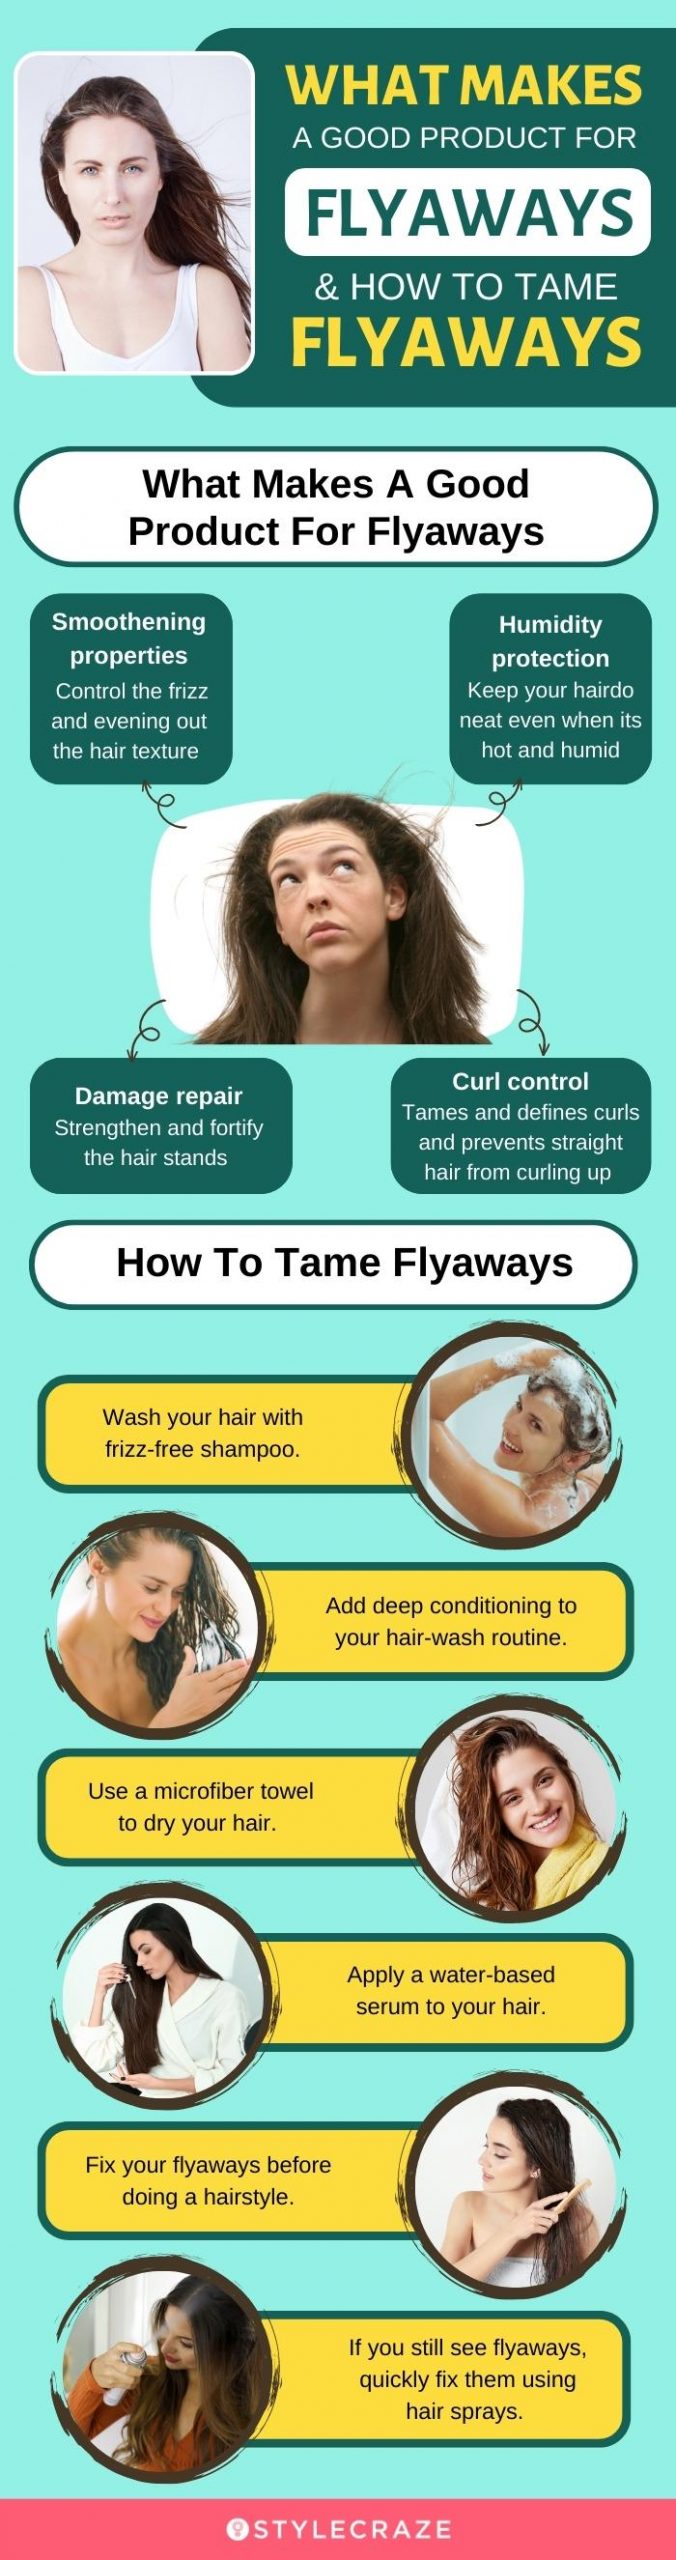 How To Tame Flyaways